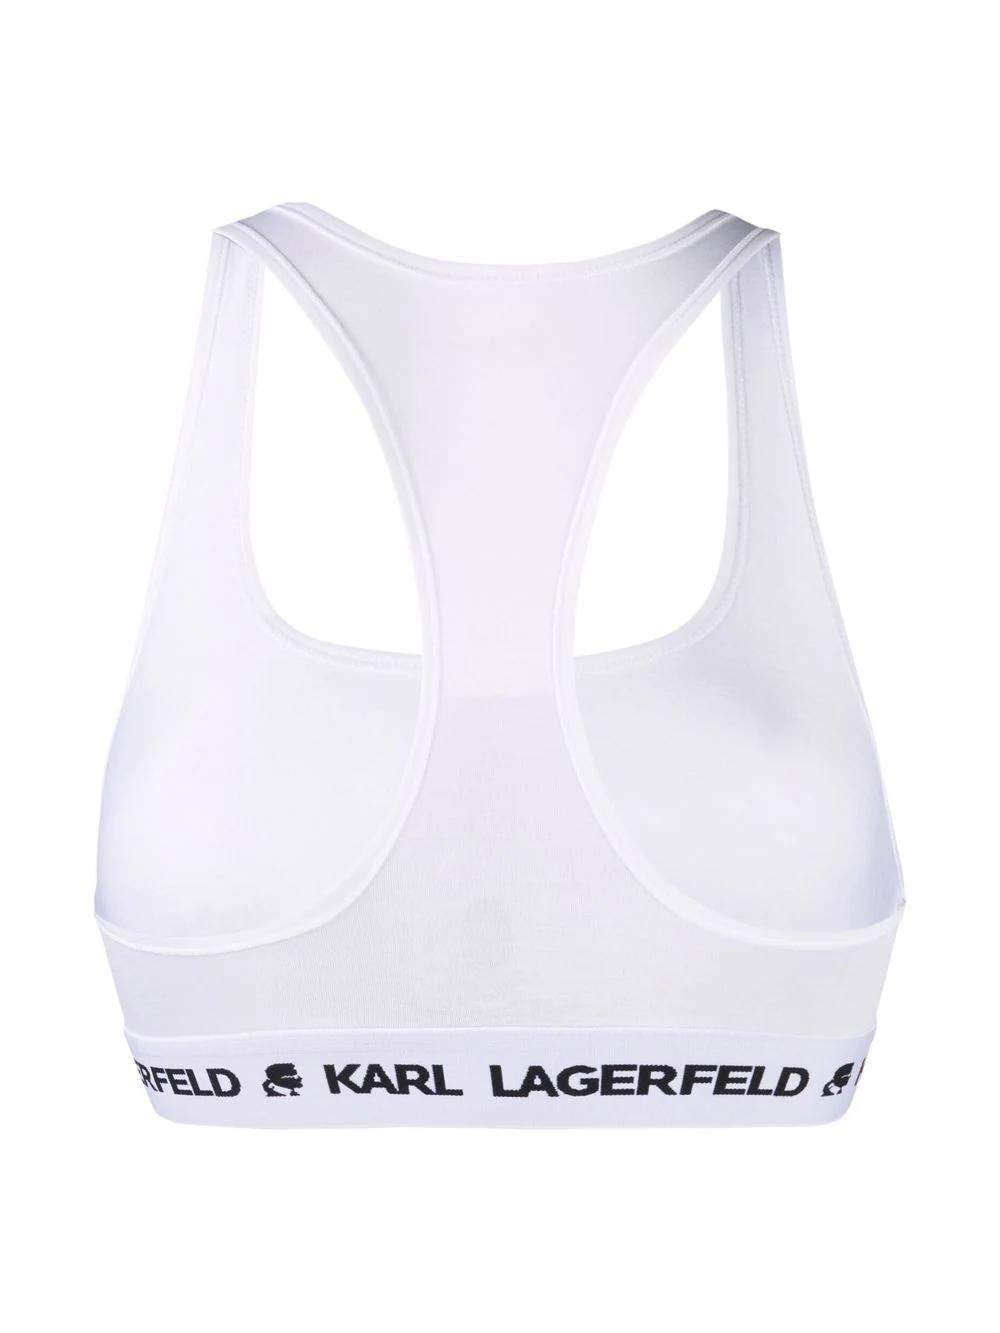 Sujetador Karl Lagerfeld blanco logo bralette